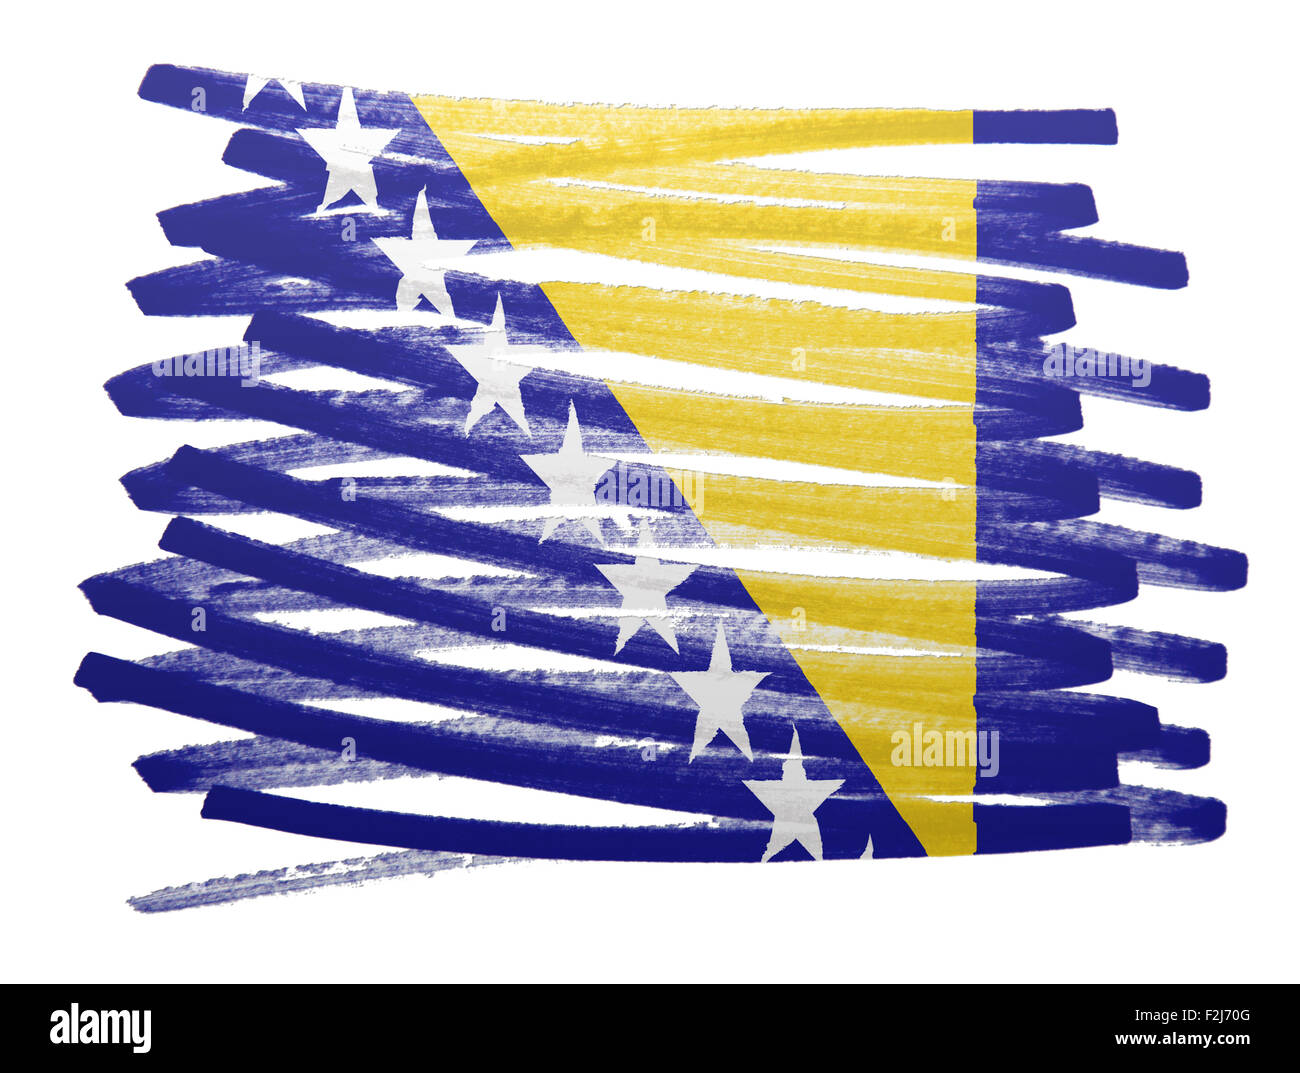 Flag illustration réalisée avec stylo - Bosnie Herzegovine Banque D'Images